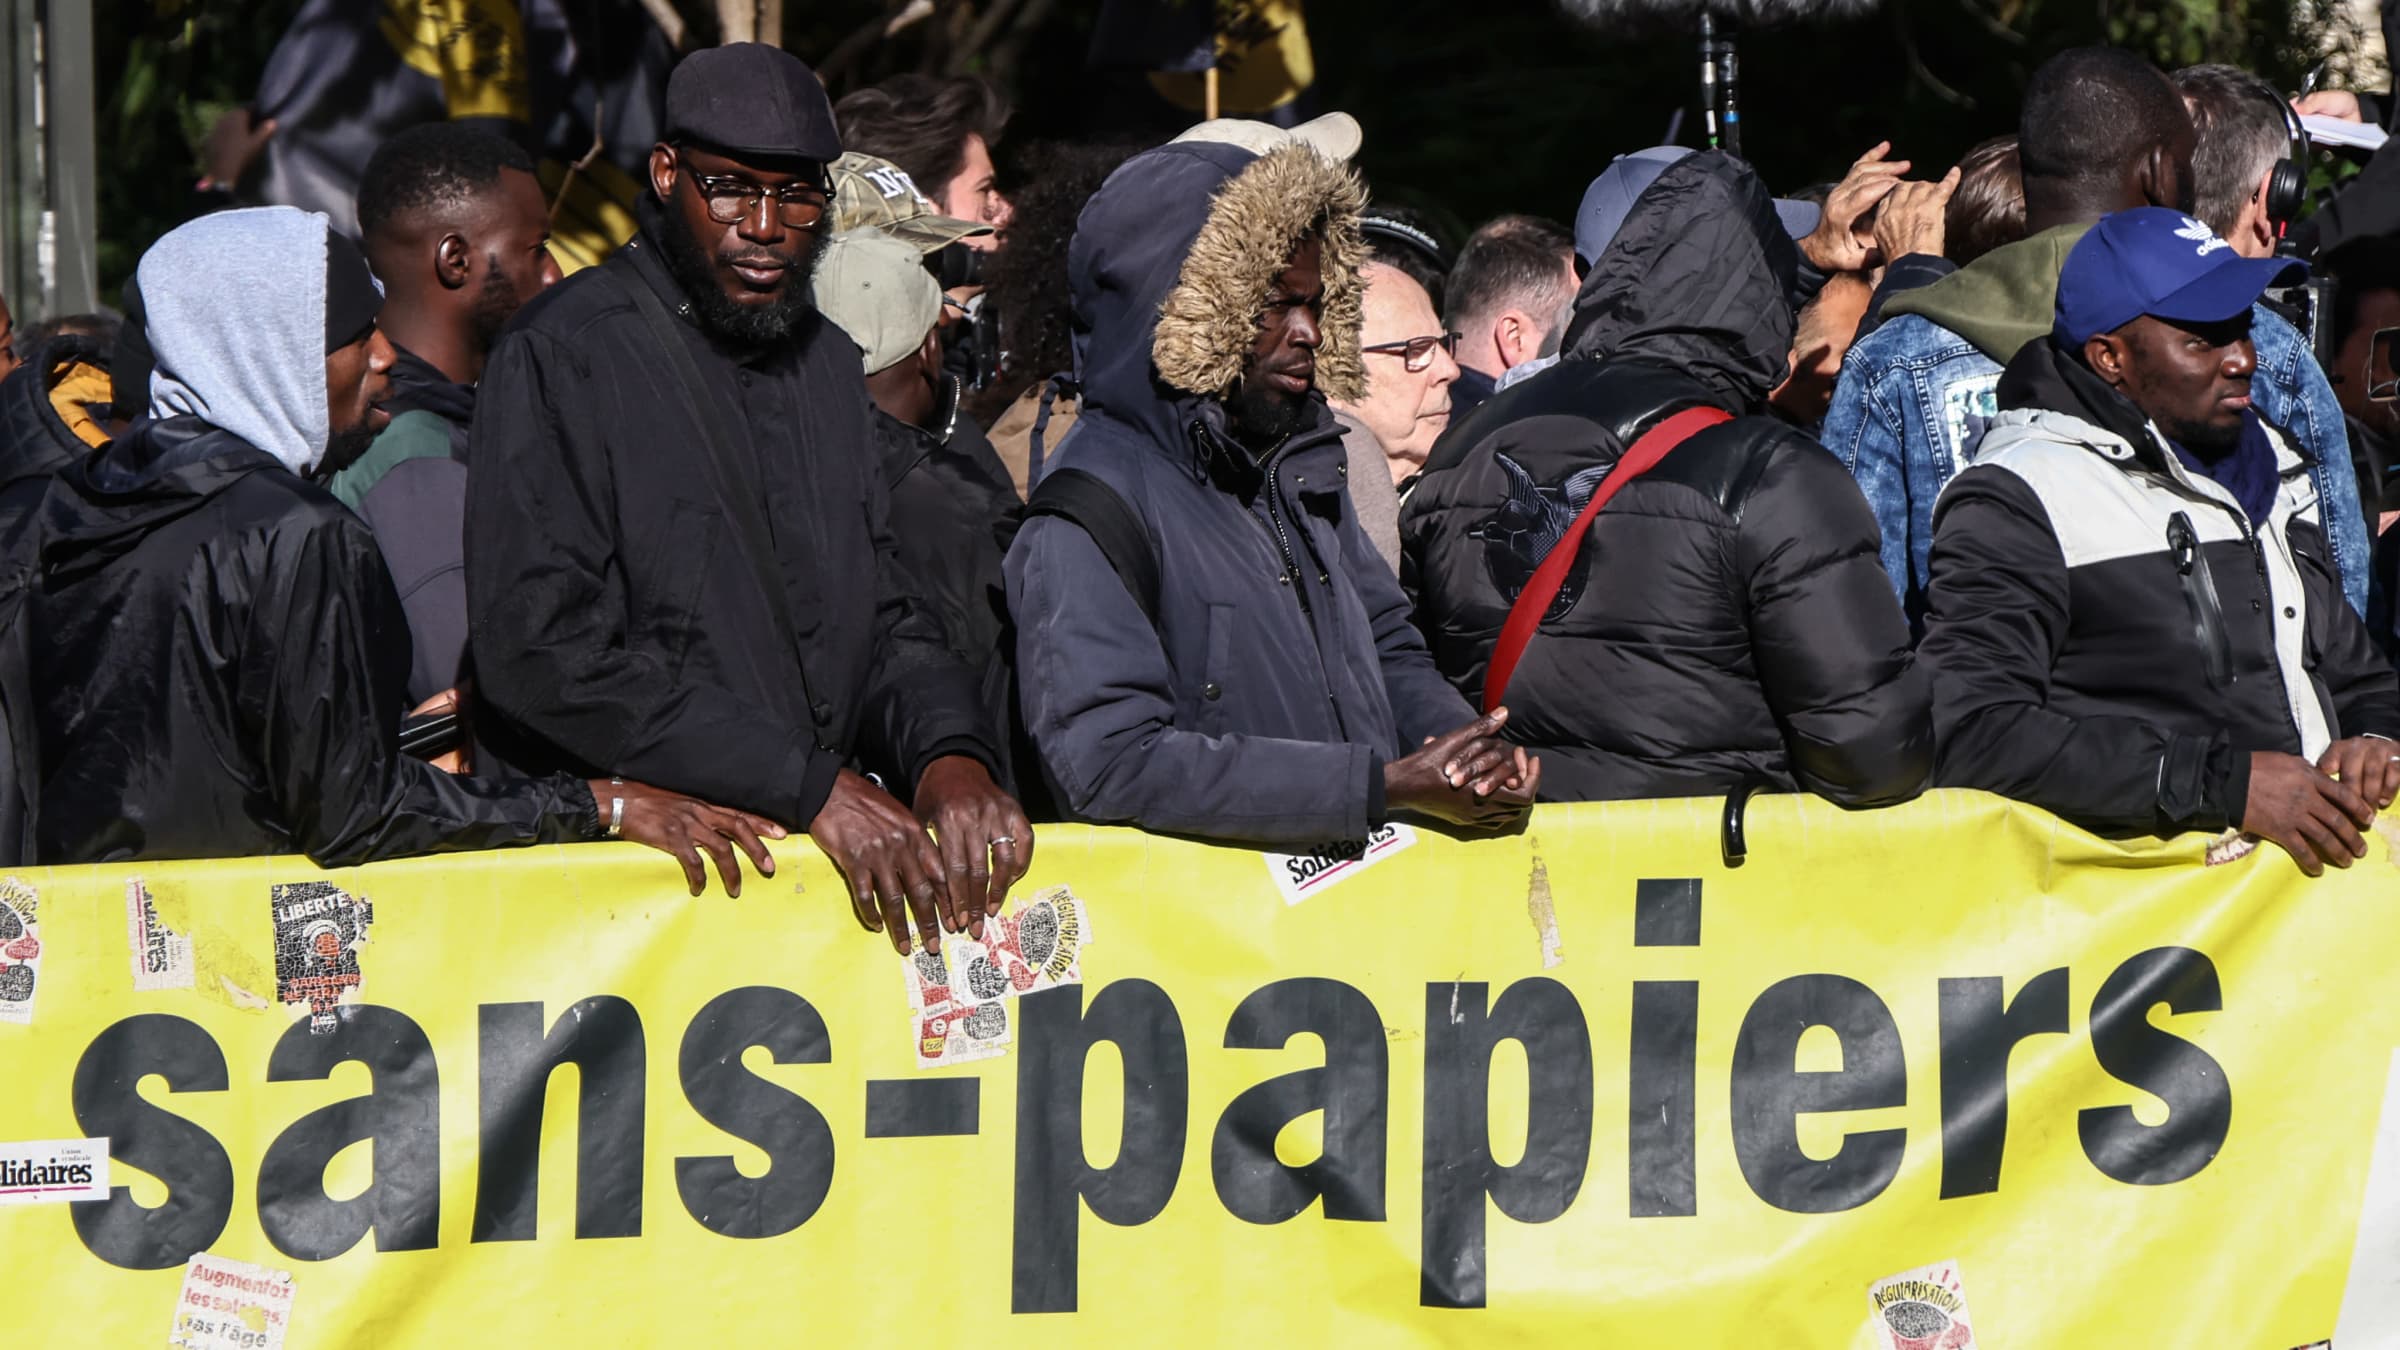 Mielenosoittajat seisovat ranskankielisen paperittomat-tekstin edessä.